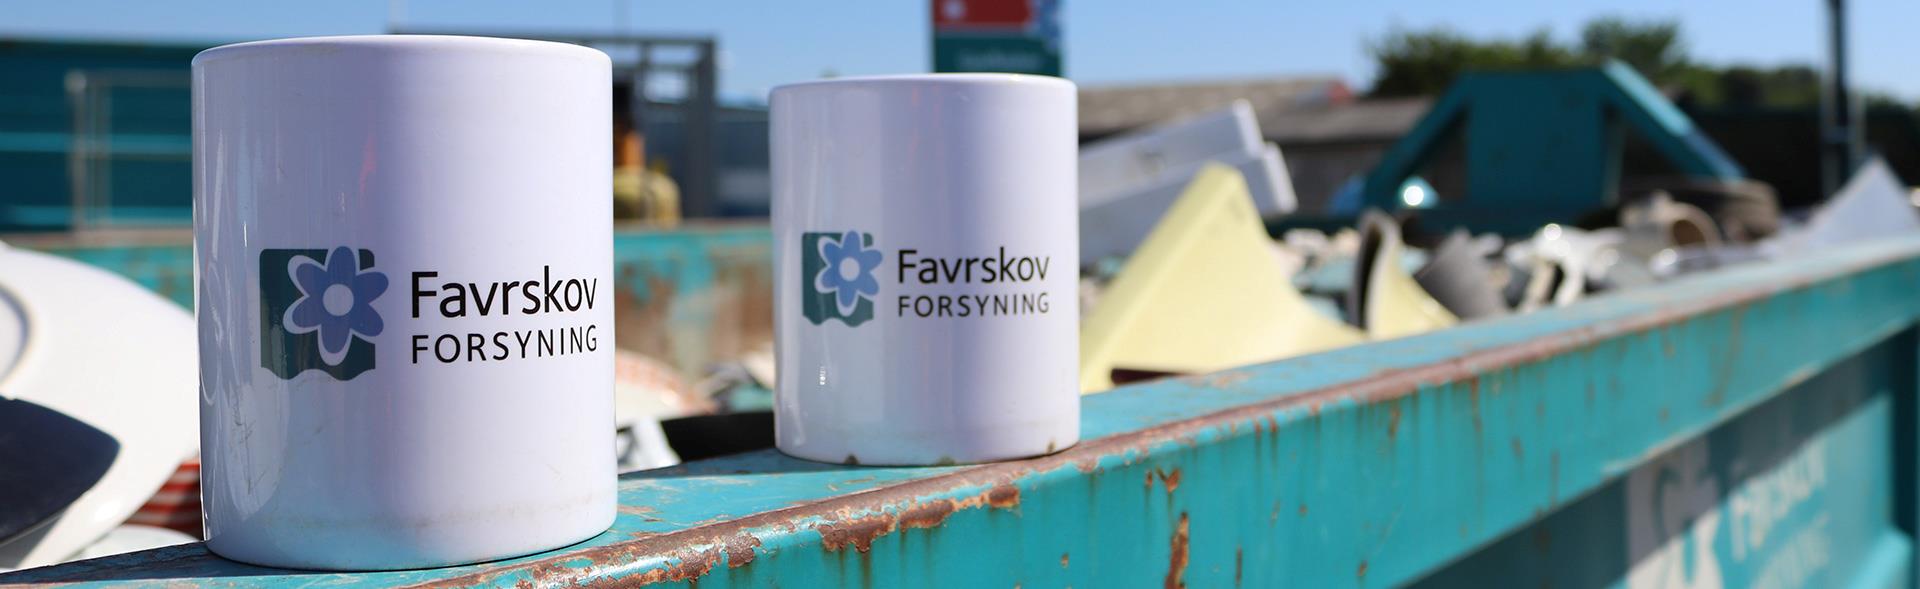 To kopper med Favrskov Forsynings logo står på kant af container på genbrugspladsen